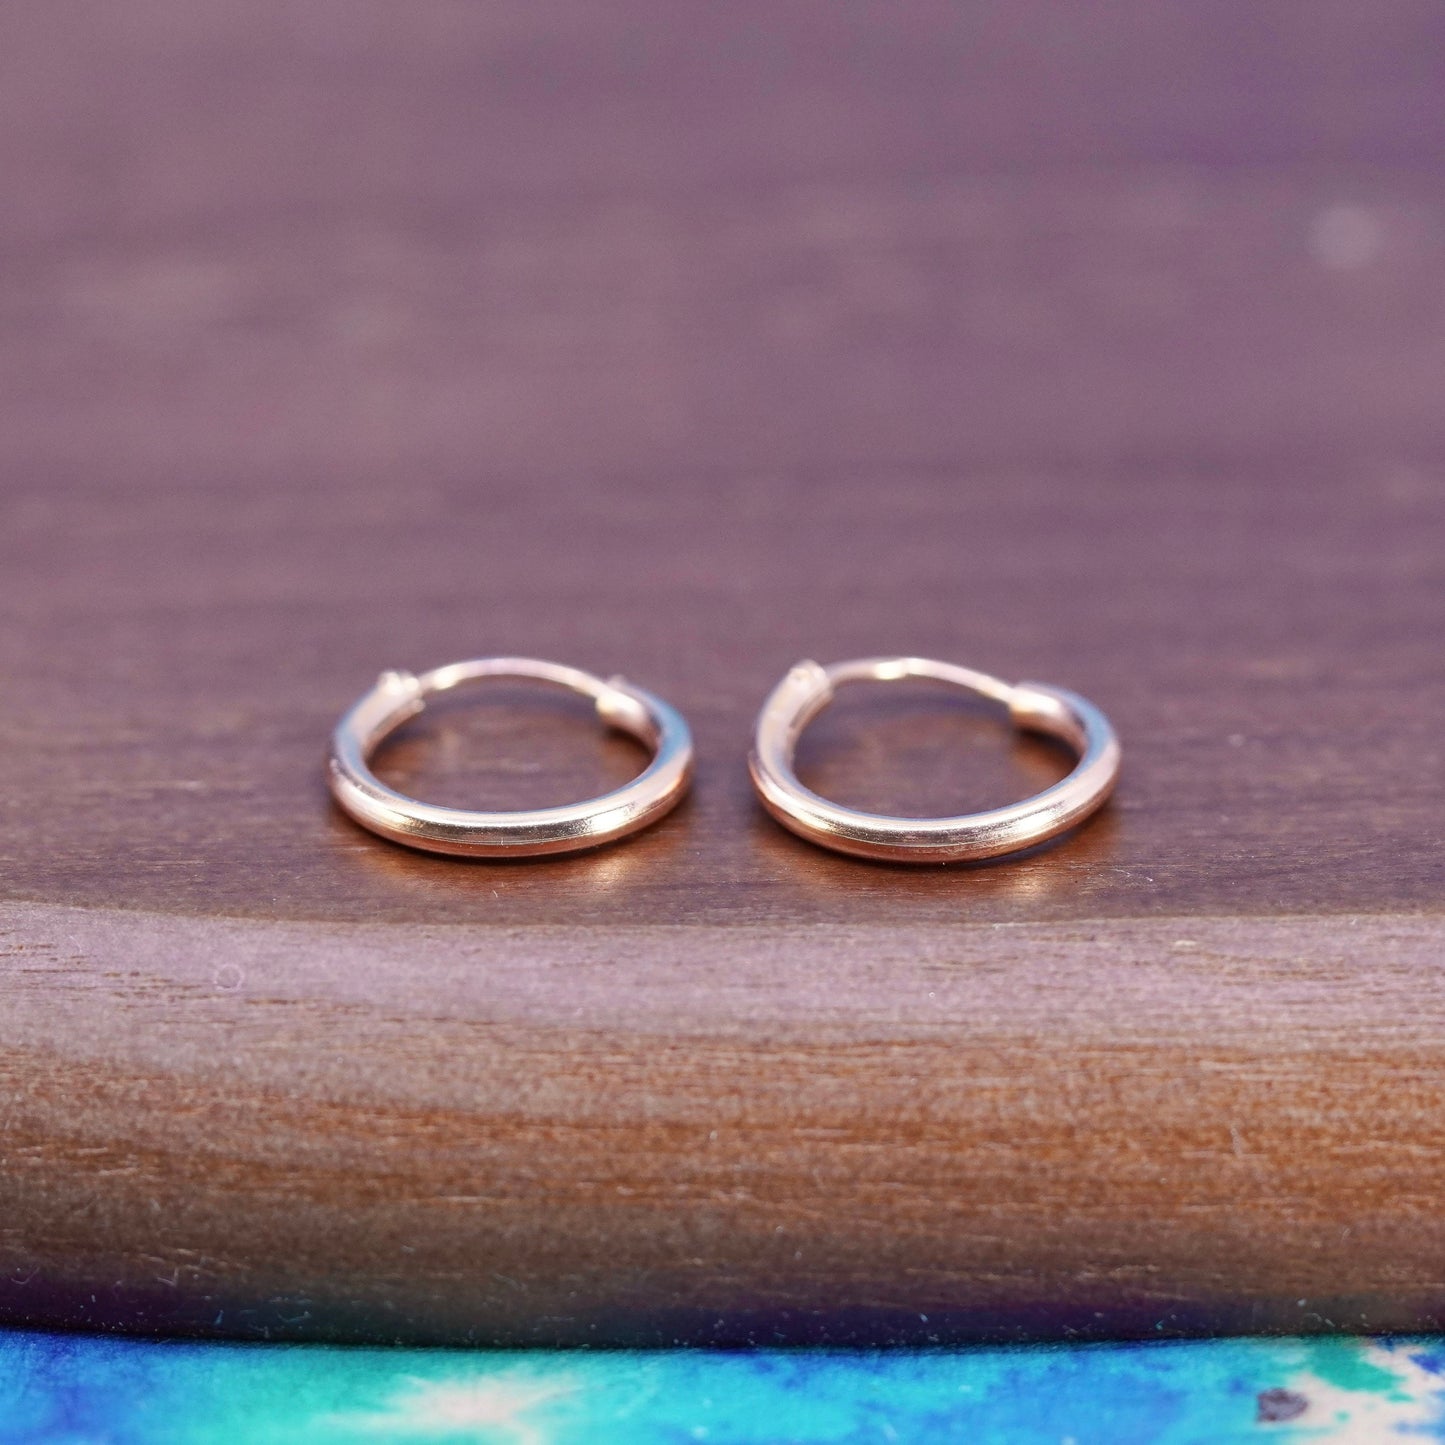 0.5”, rose gold over Sterling silver handmade hoop earrings, fine 925 huggie